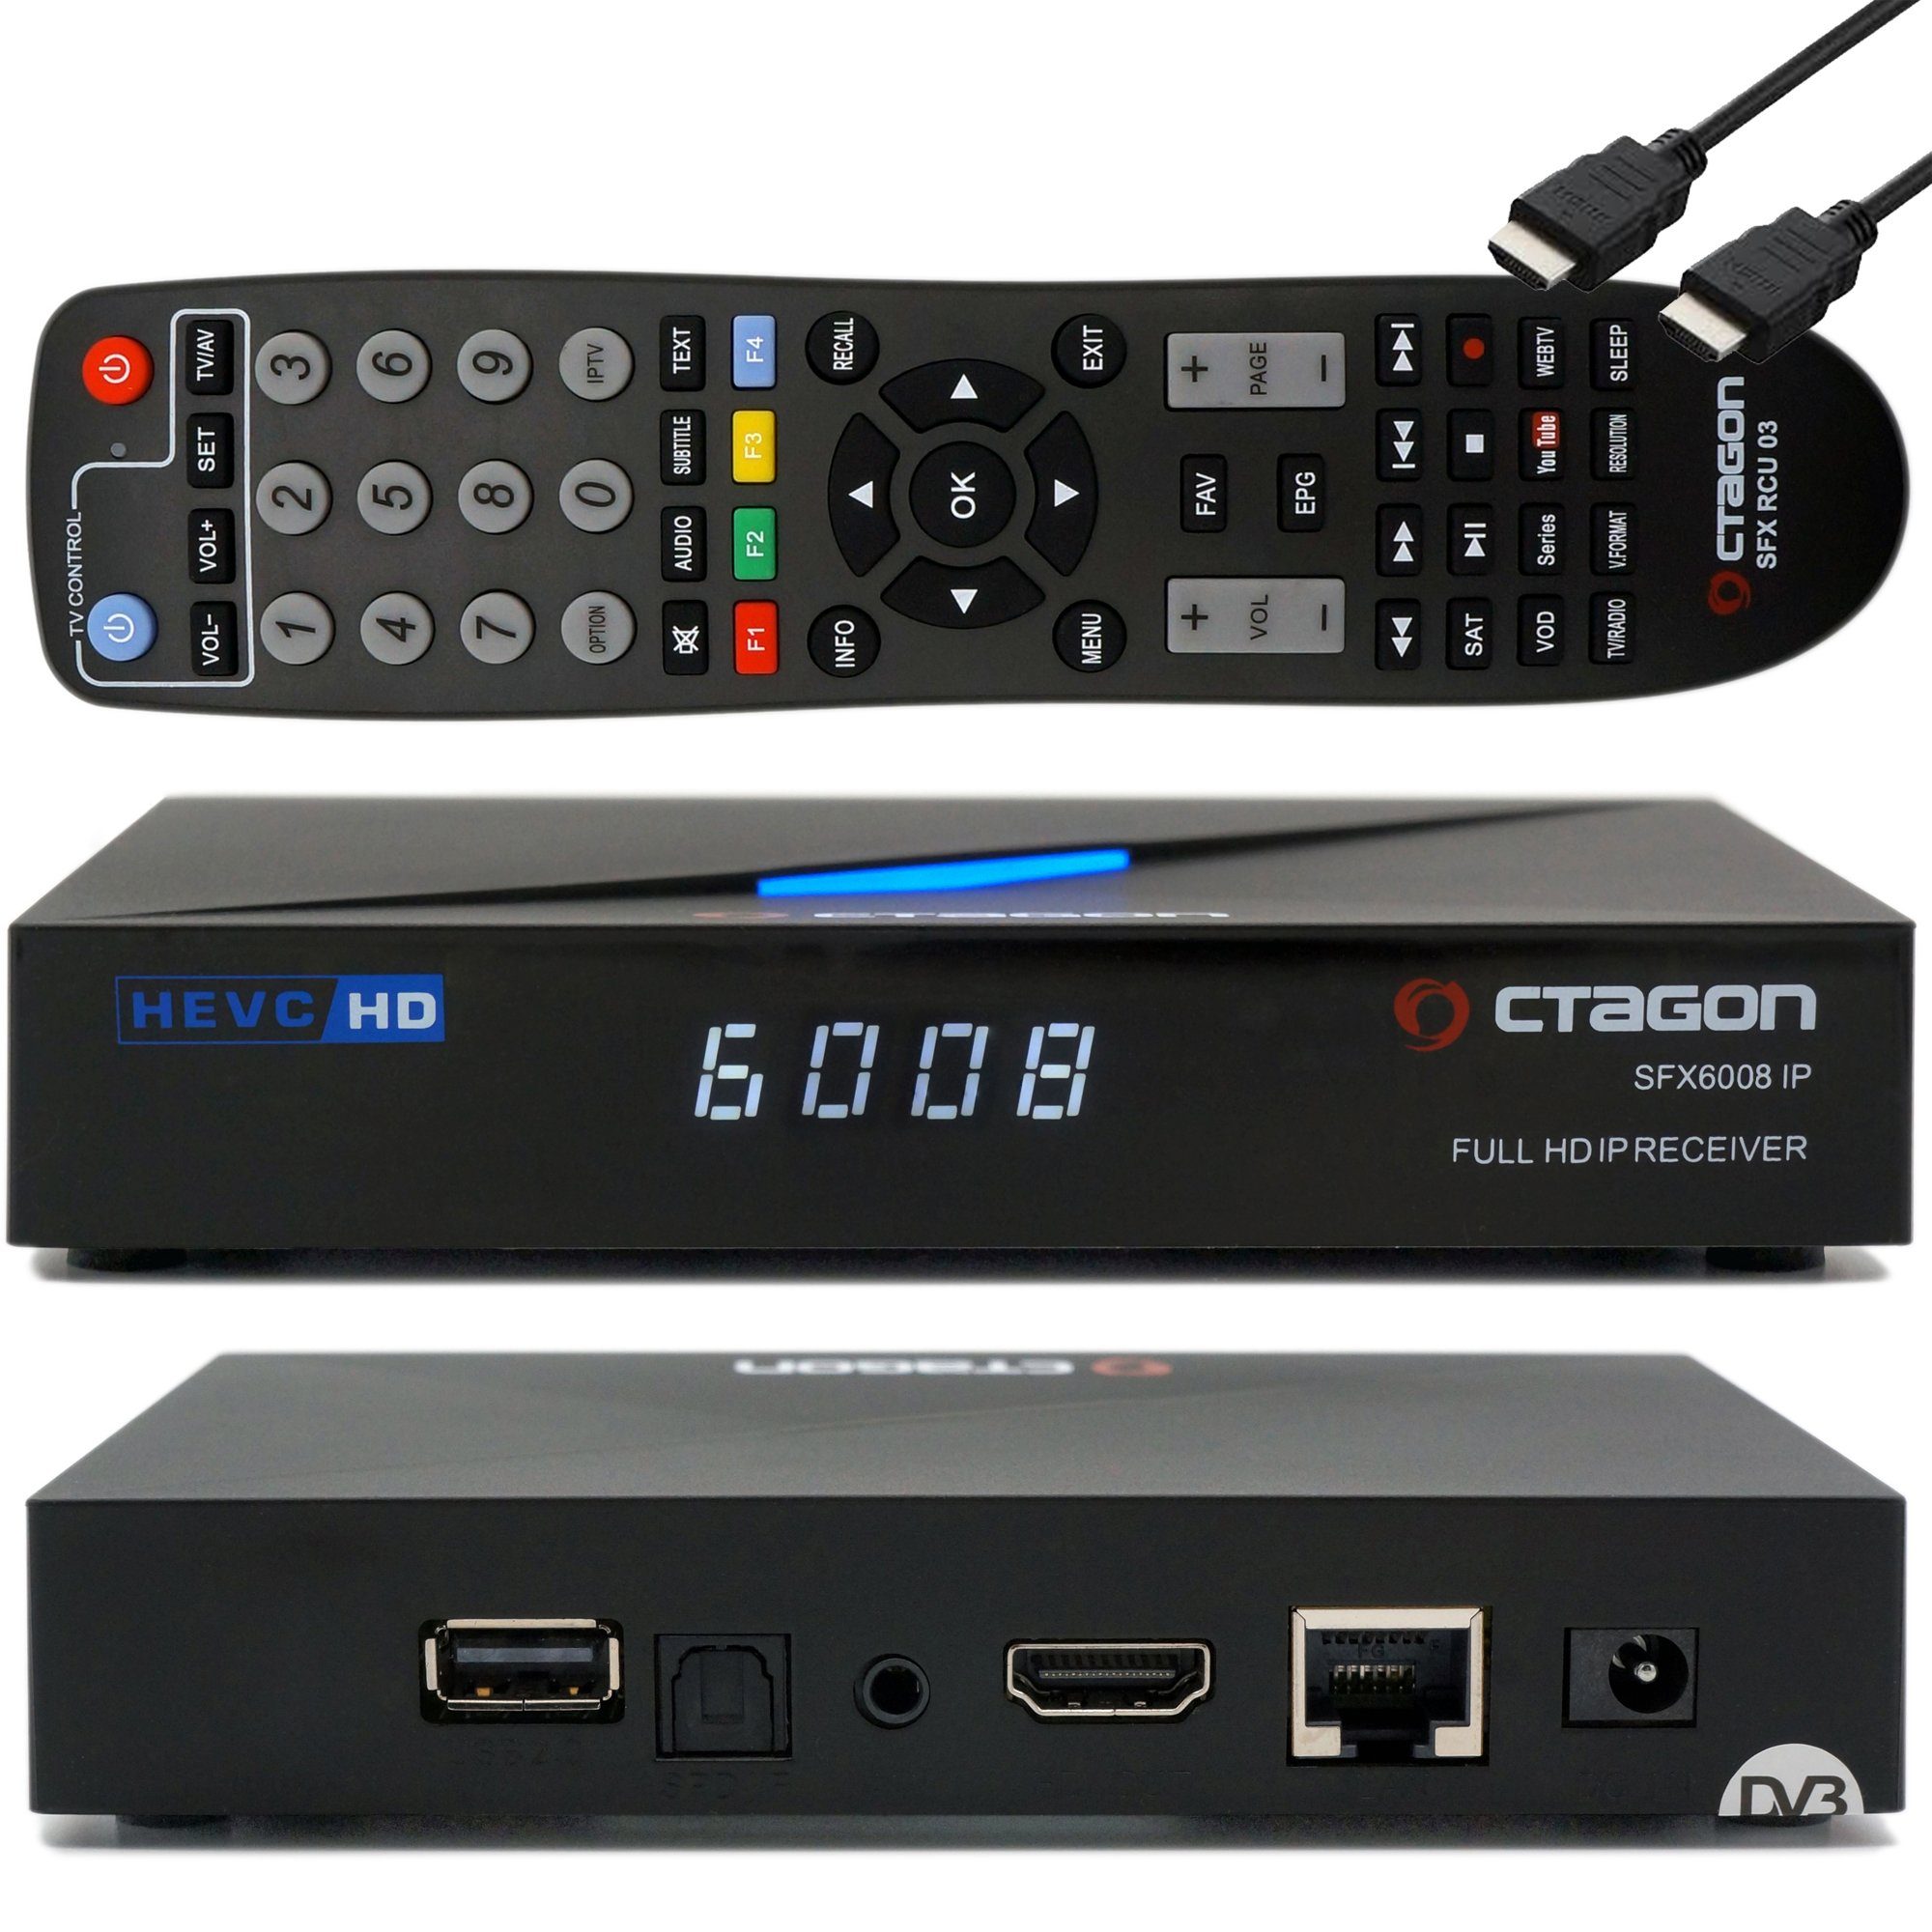 Zum Schnäppchenpreis OCTAGON Streaming-Box HD H.265 E2 Smart - IPTV mit Receiver IP Linux Sat IP HEVC to SFX6008